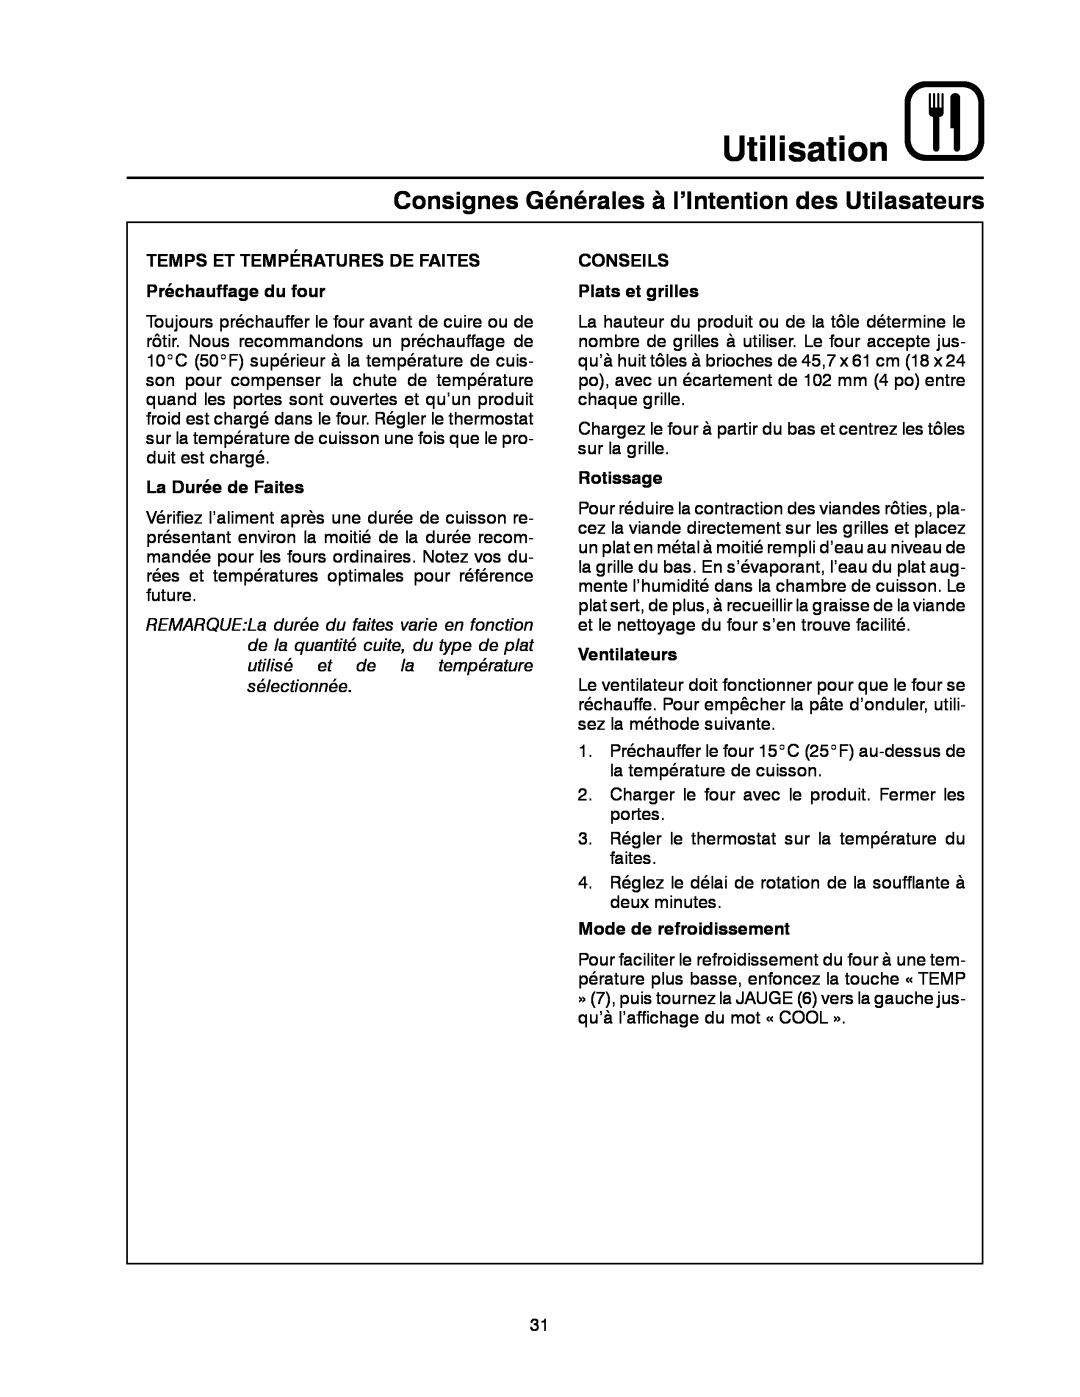 Blodgett XR8-G manual Consignes Générales à l’Intention des Utilasateurs, Utilisation, La Durée de Faites, Rotissage 